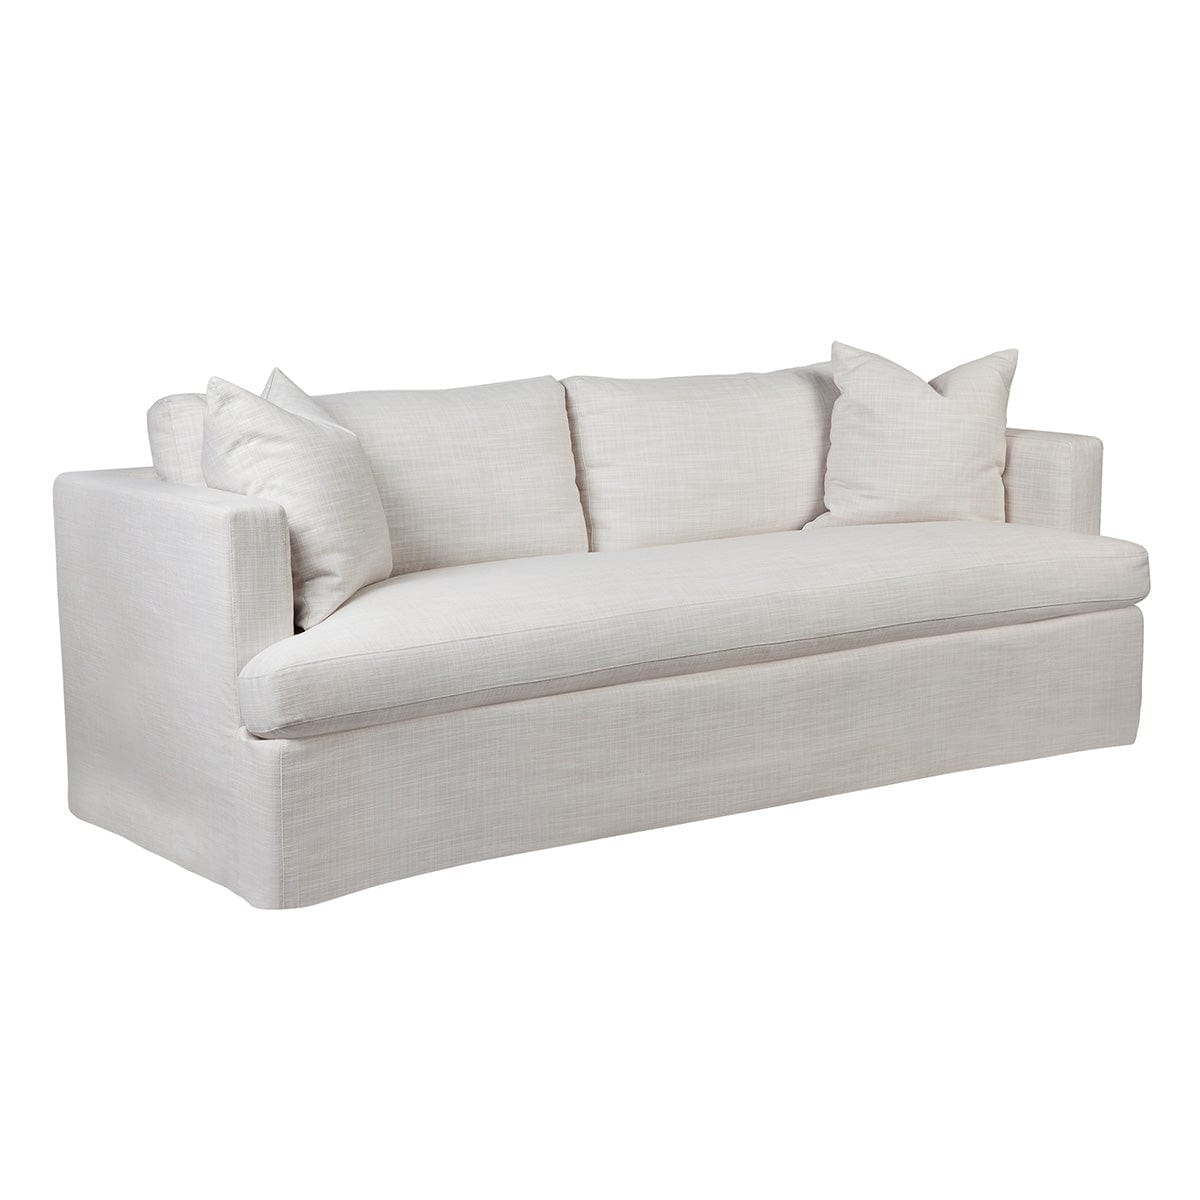 Cafe Lighting & Living Birkshire 3 Seater Slip Cover Sofa - Off White Linen